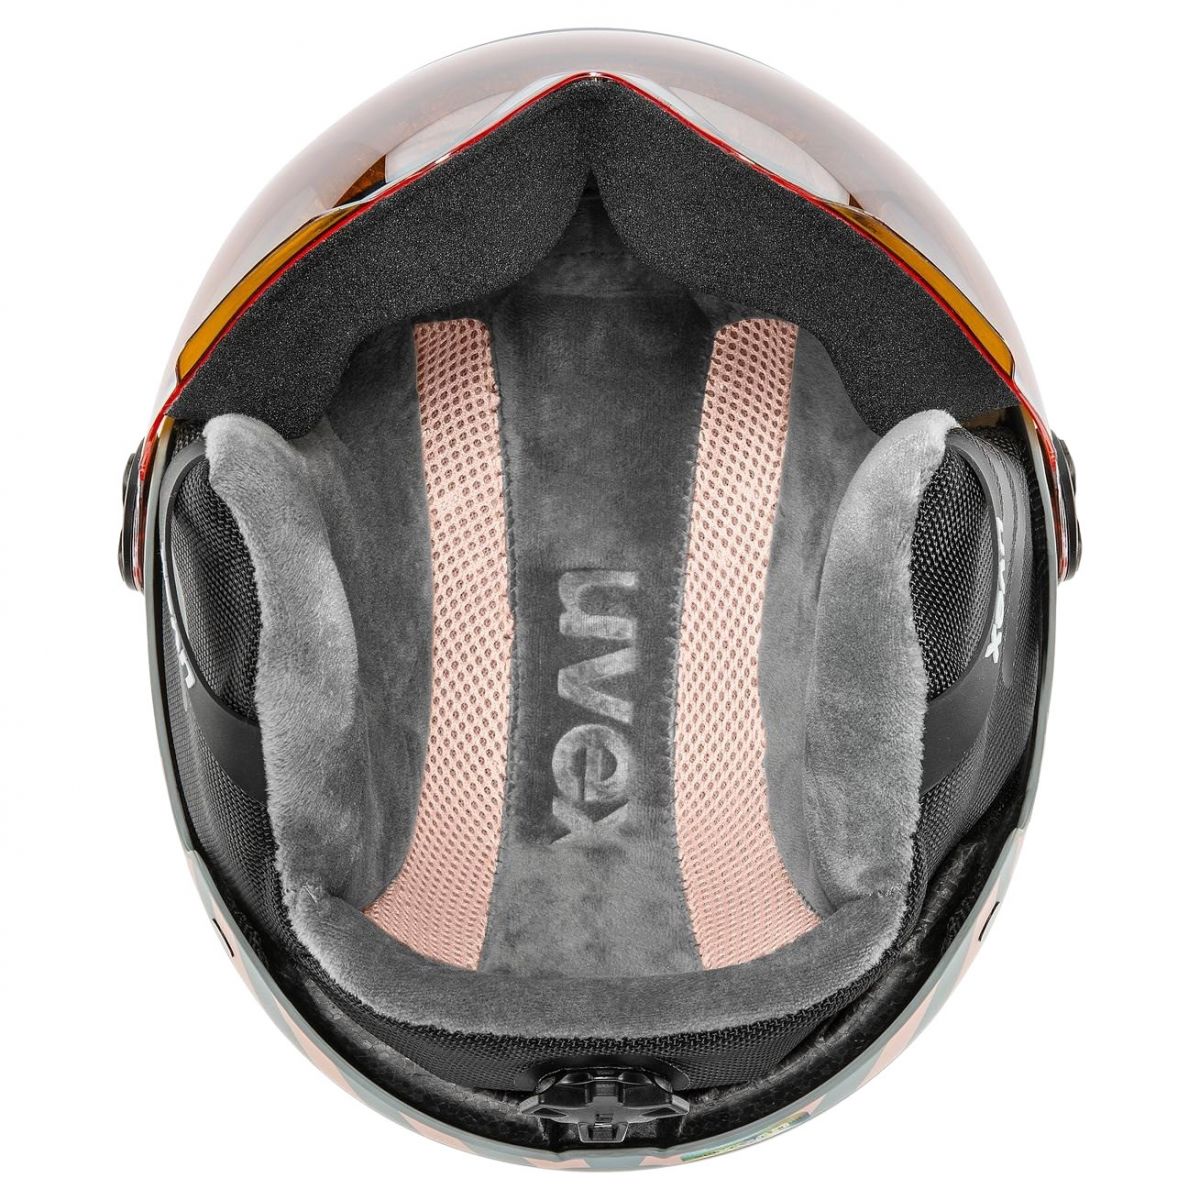 Uvex Rocket JR Visor, casque de ski avec visière, junior, gris clair/rose